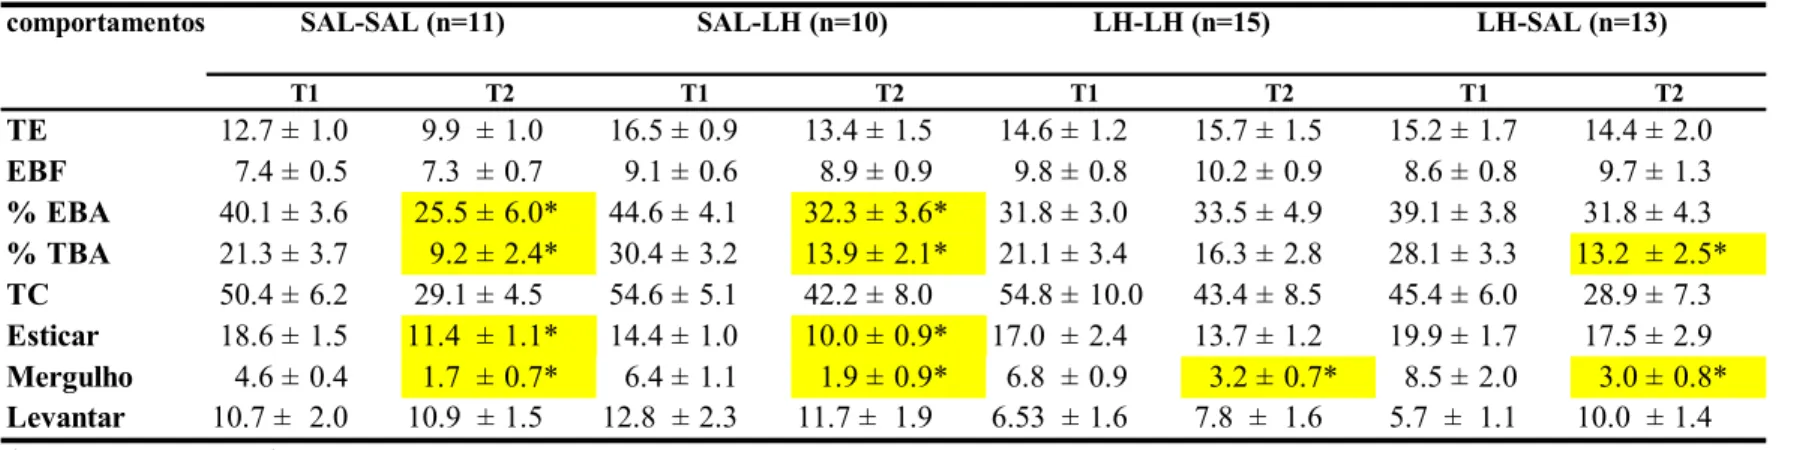 Tabela 2: Efeito da LH (500mg/kg) ou salina administrada i.p. pré-T1 e pré-T2 sobre os comportamentos de camundongos submetidos ao LCE